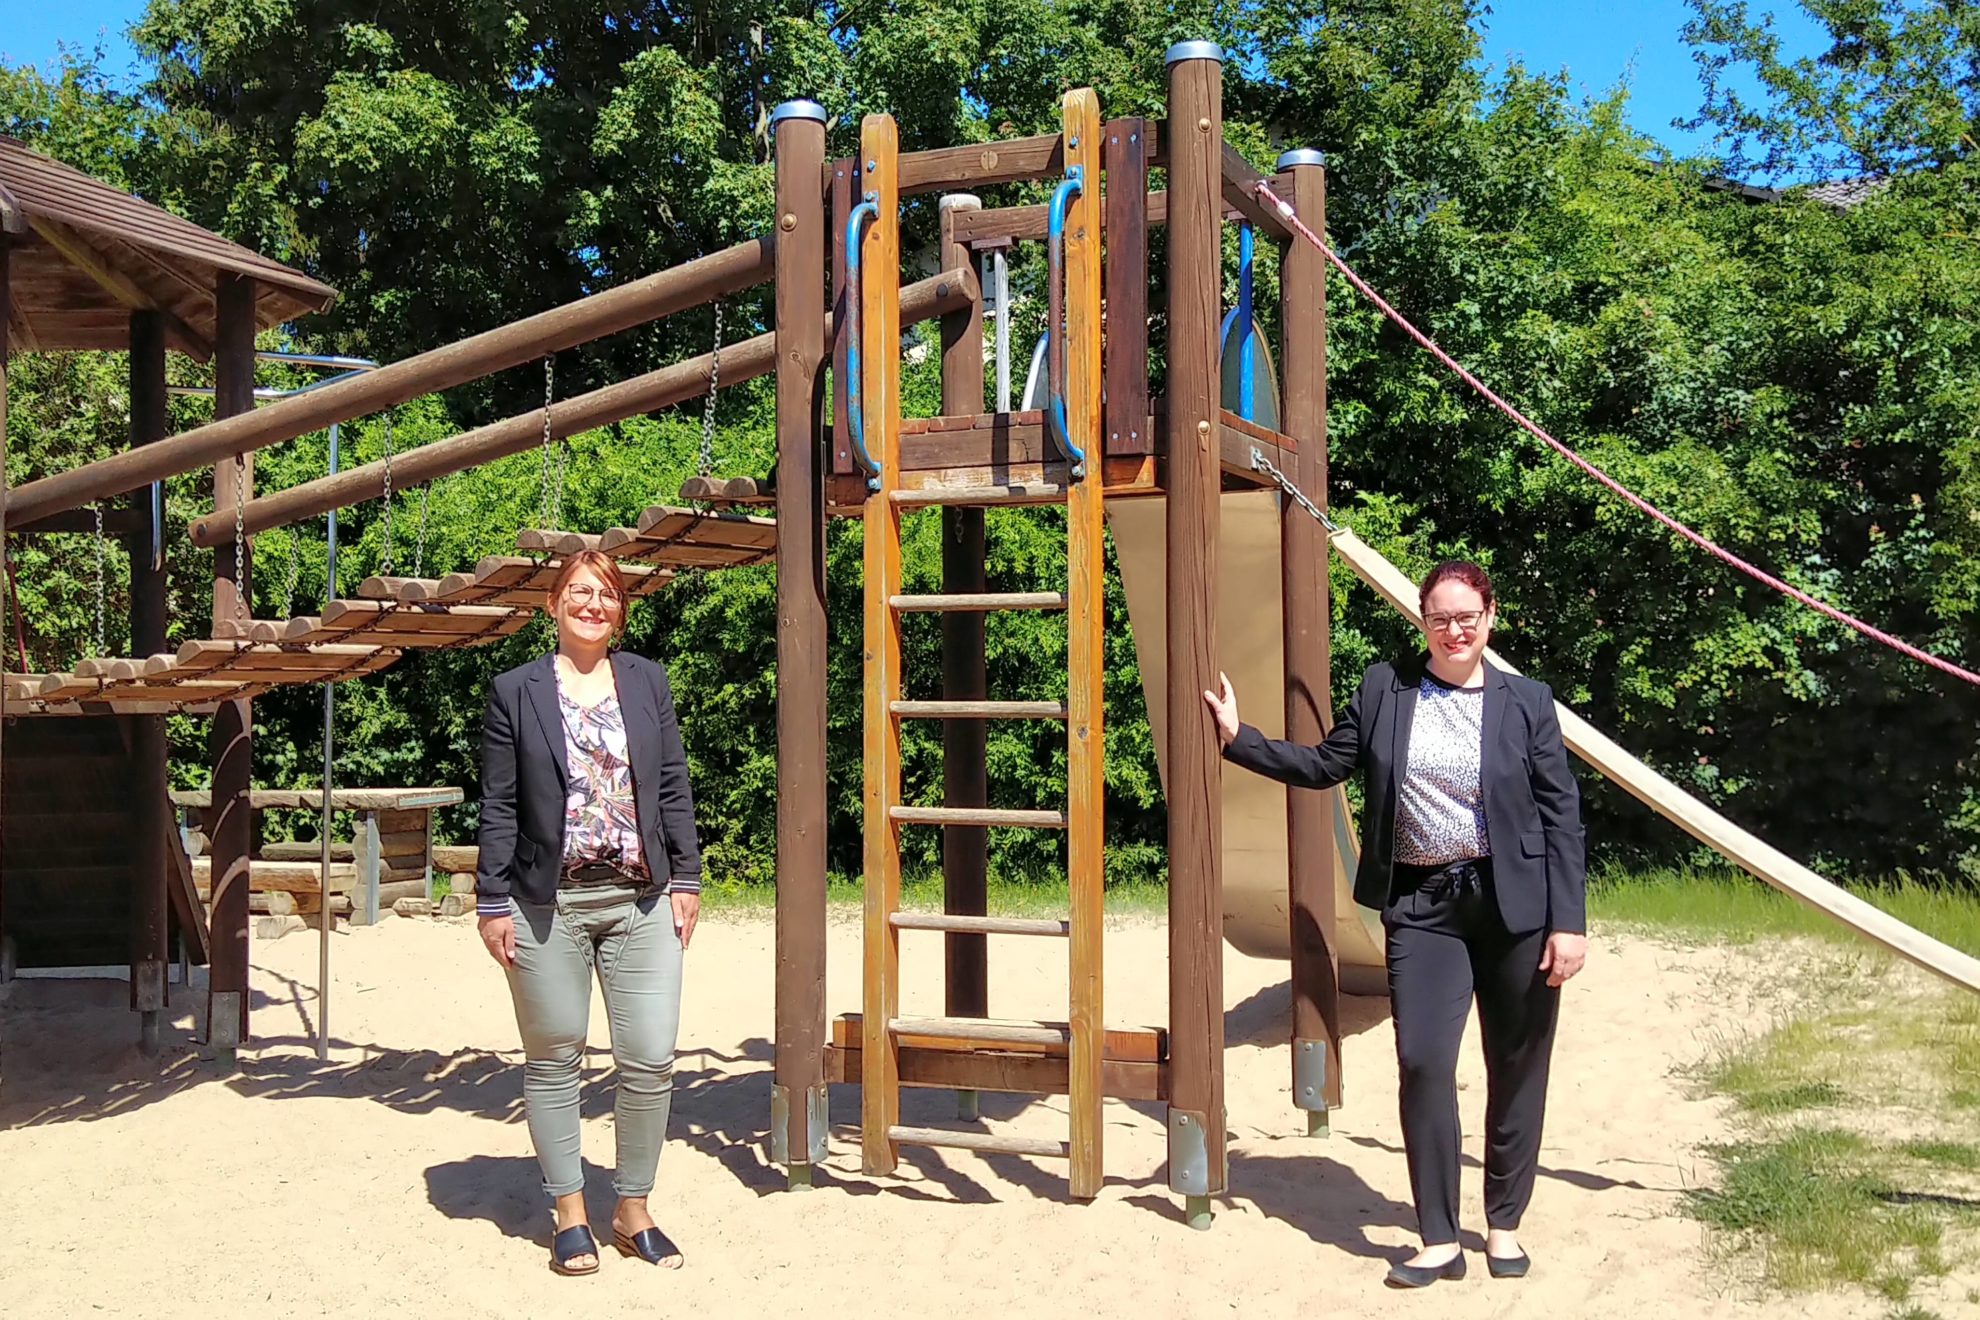 Die Wetterauer Landtagsabgeordnete Lisa Gnadl und die Ranstädter Bürgermeisterin Cäcilia Reichert-Dietzel (beide SPD) auf einem Spielplatz neben einen Klettergerüst